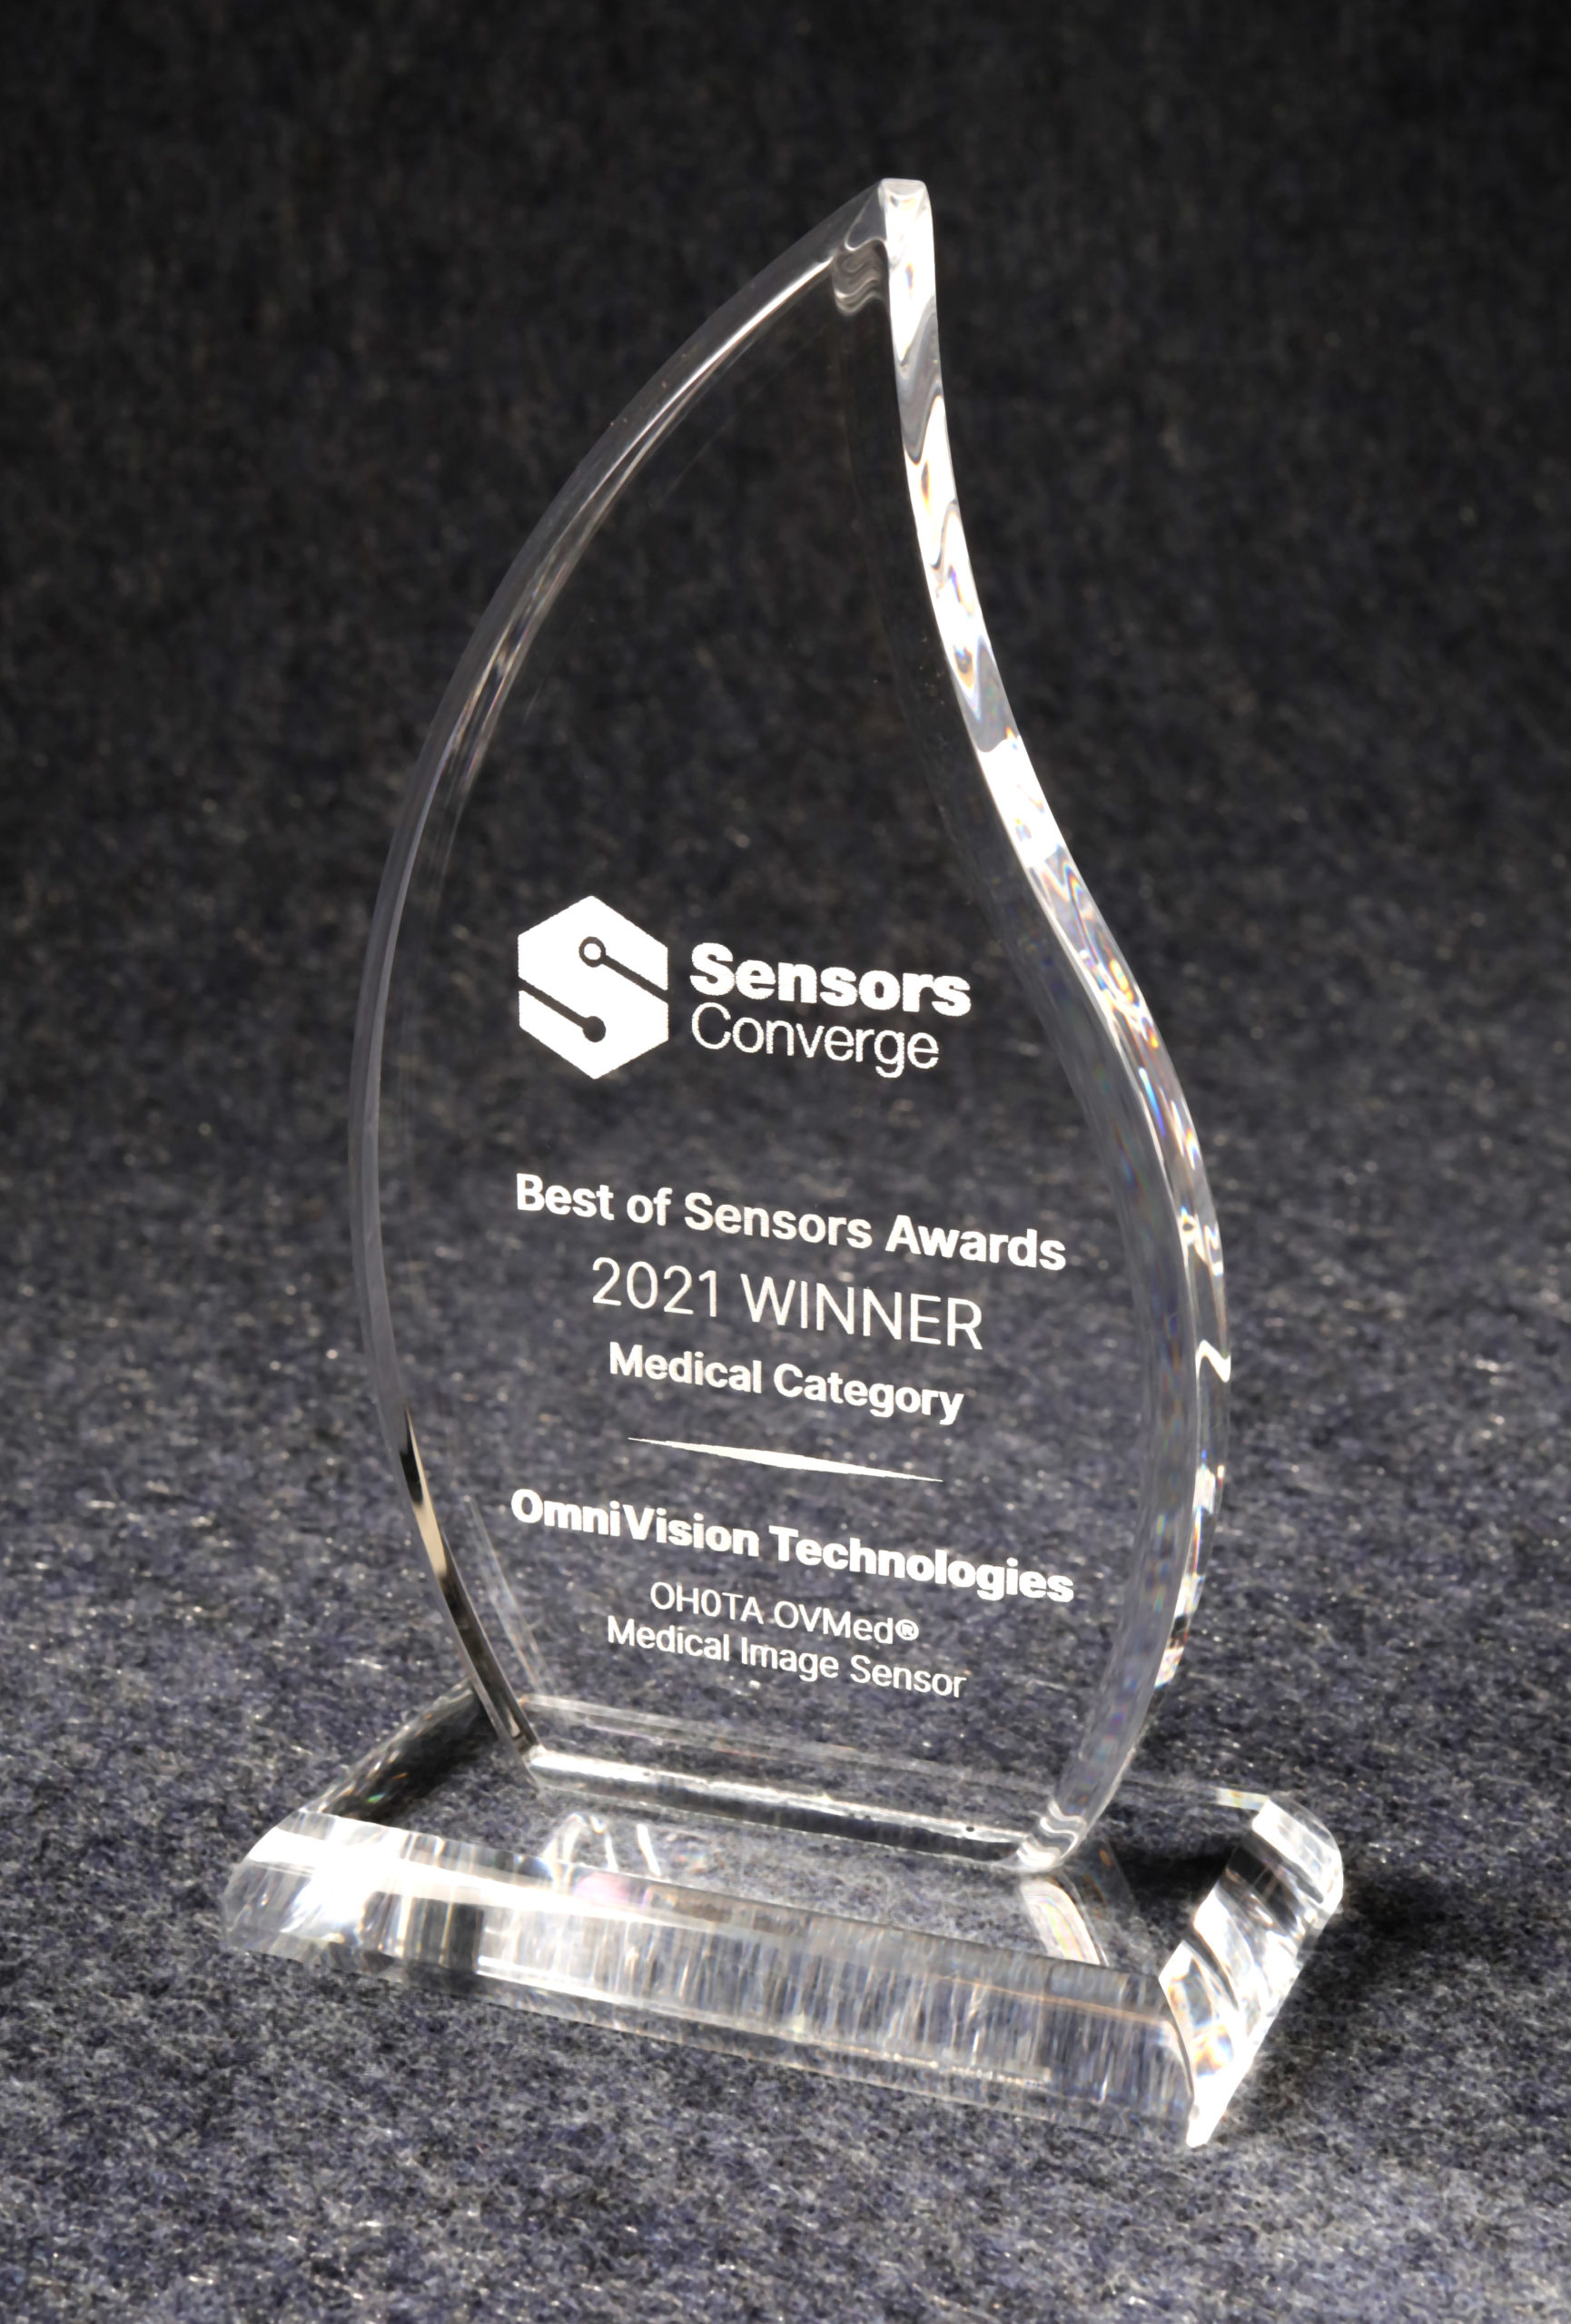 Sensors Converge - Best of Sensors Awards - 2021 Winner - Medical Category - OMNIVISION - OH0TA OVMed® Medical Image Sensor